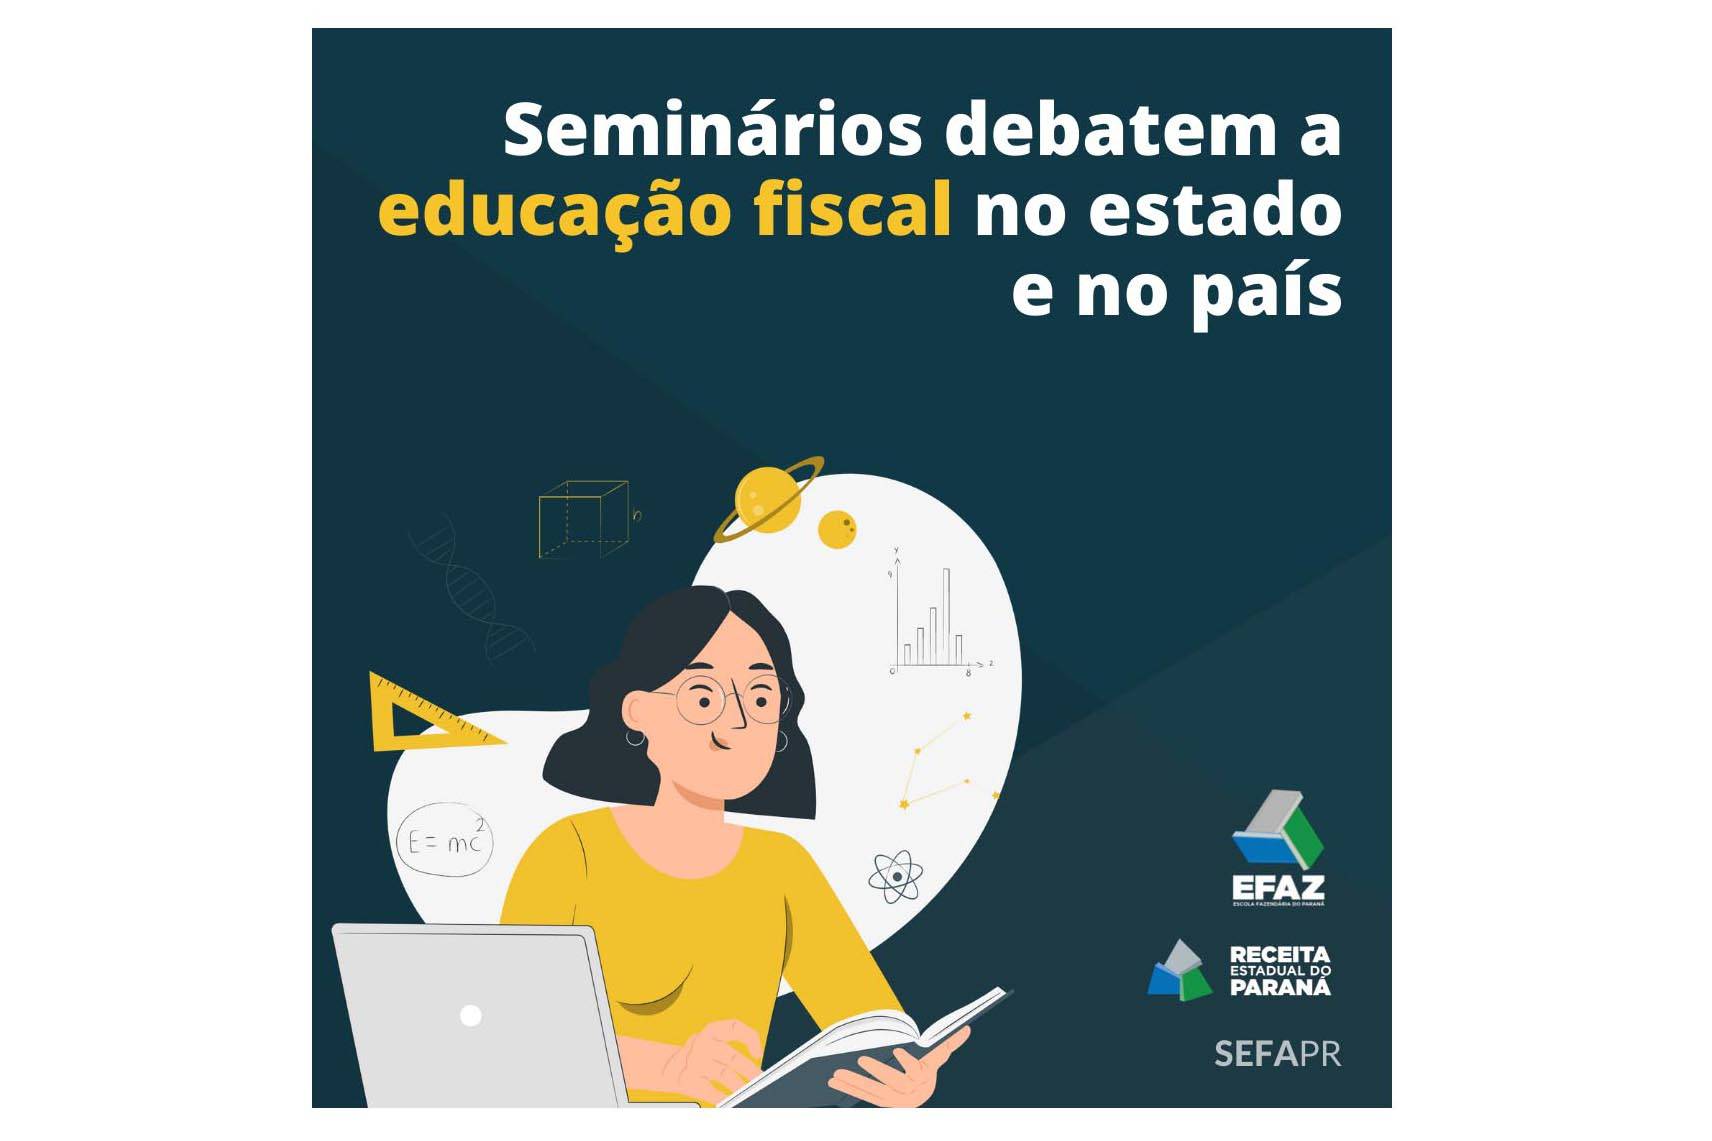 Sindafep participa de seminários virtuais sobre educação fiscal